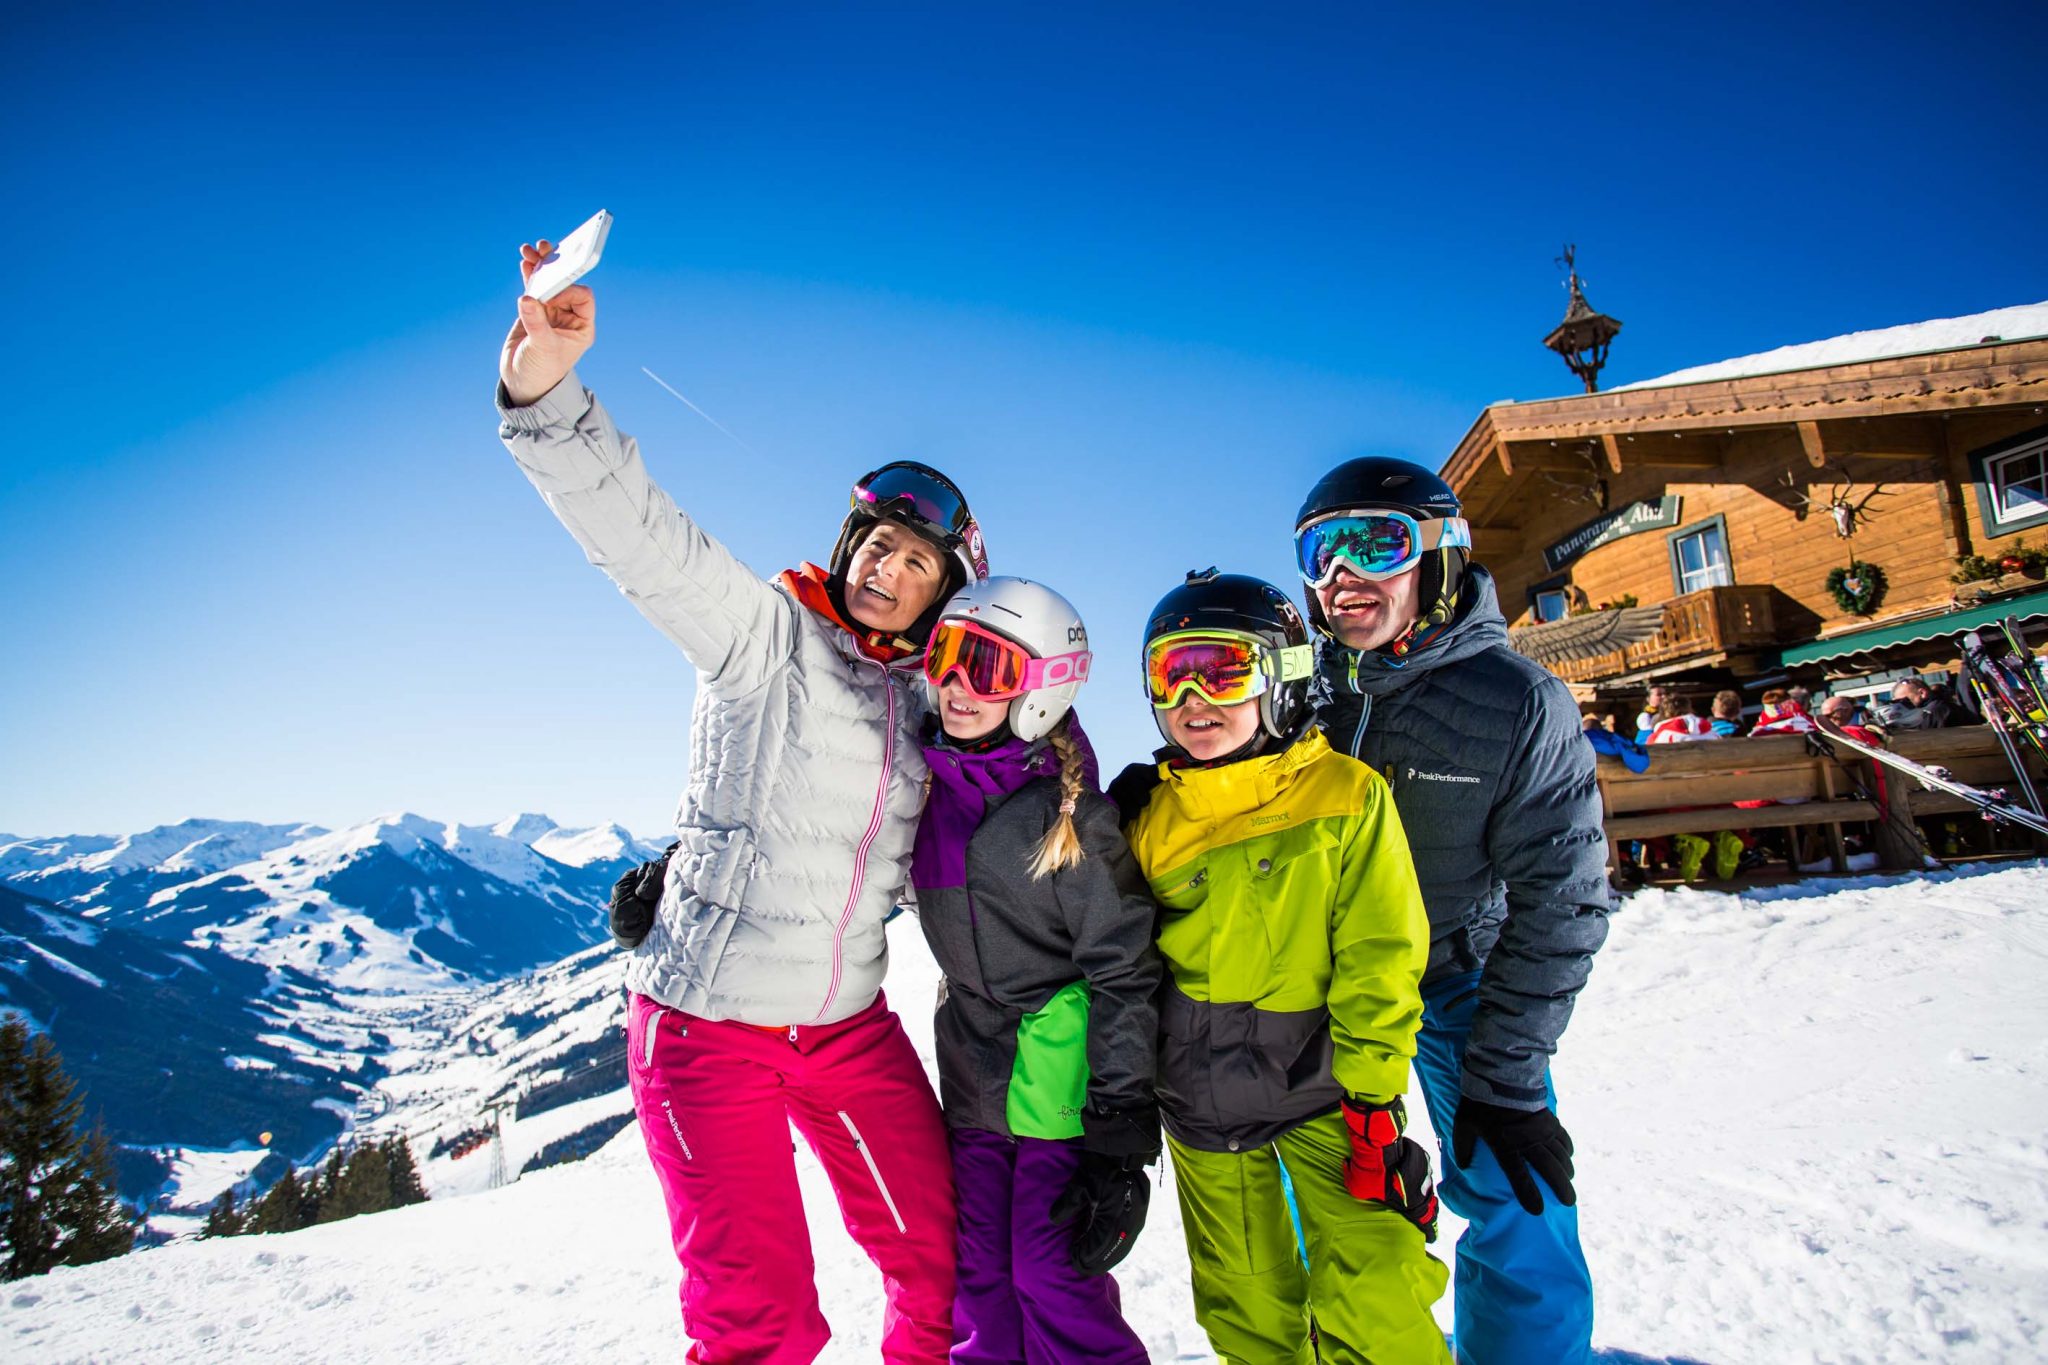 Выбор горнолыжного курорта. Люди на горнолыжном курорте. Зимний курорт. Семья в горах. Туристы зимой.